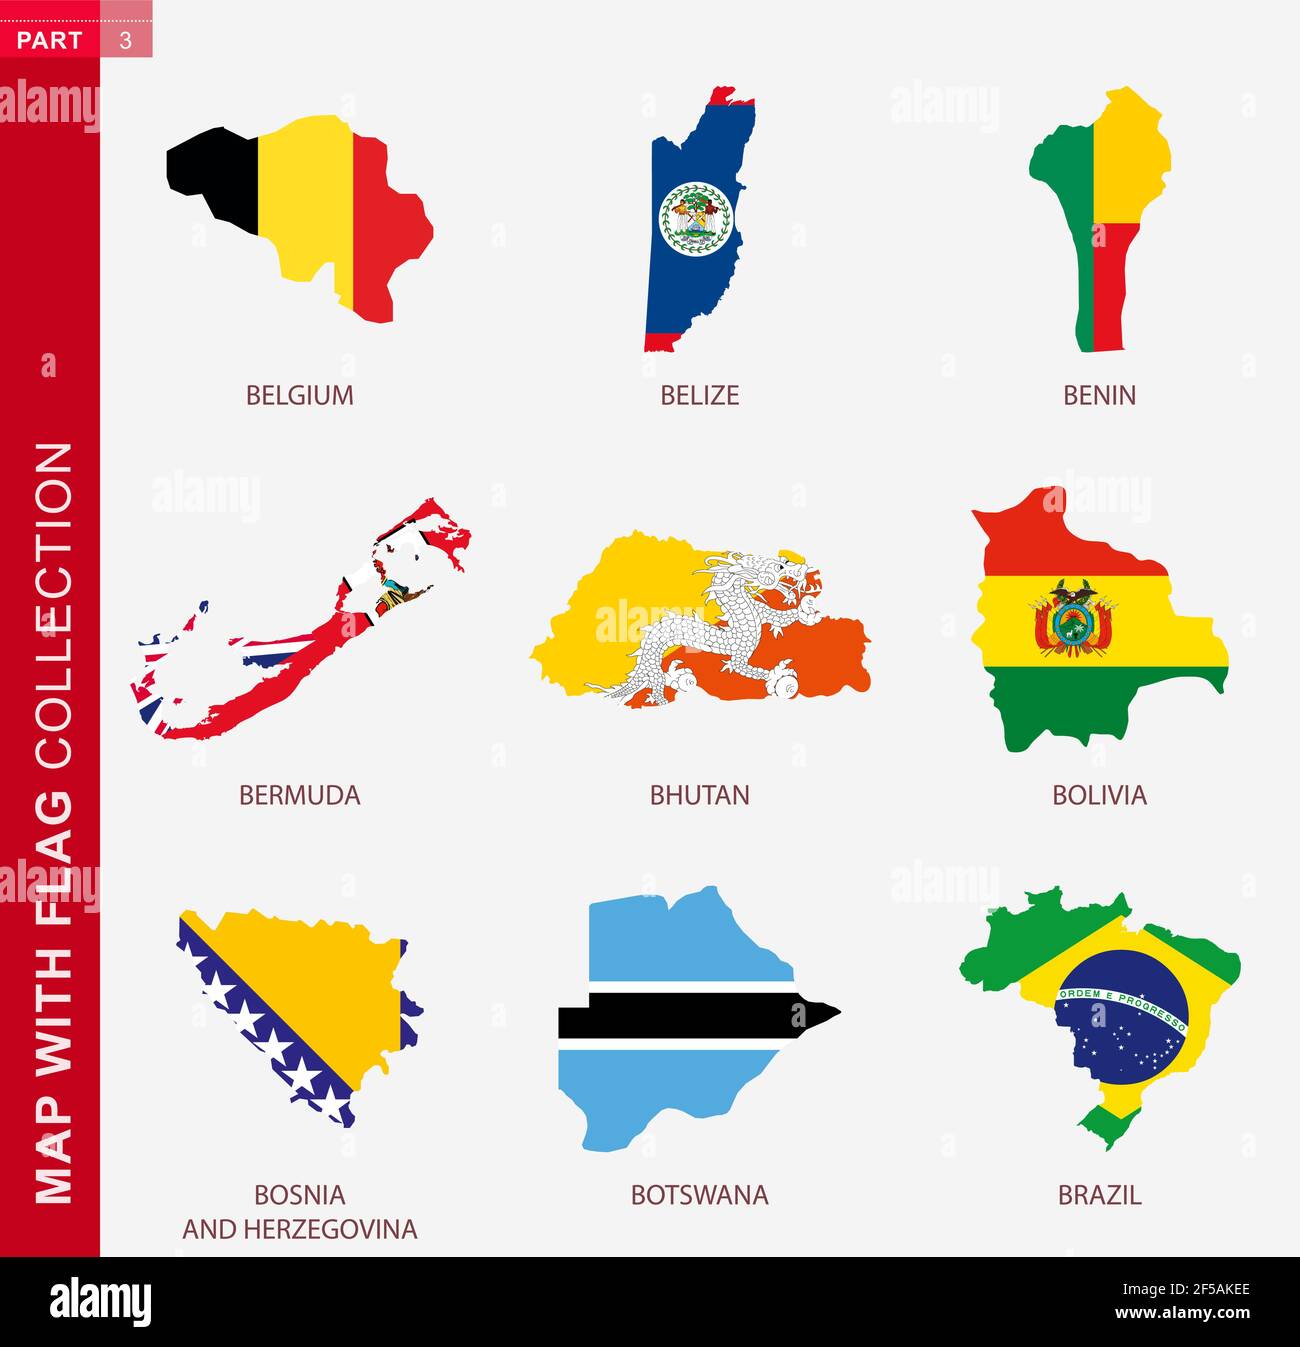 Mappa con raccolta bandiere, nove mappe con bandiera del Belgio, Belize, Benin, Bermuda, Bhutan, Bolivia, Bosnia-Erzegovina, Botswana, Brasile Illustrazione Vettoriale